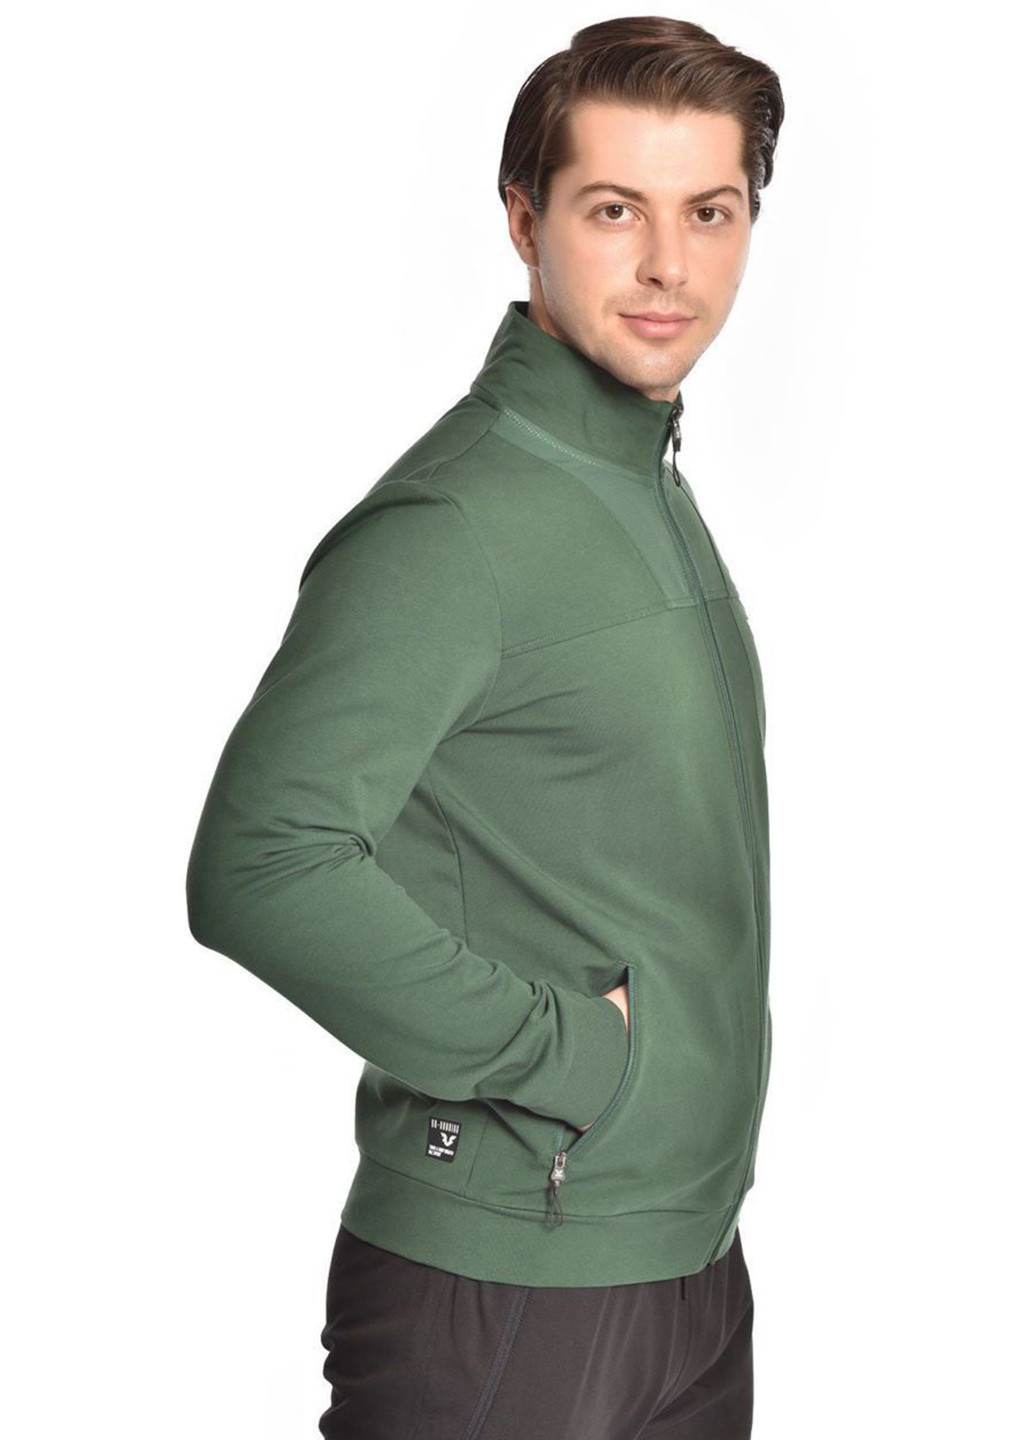 Зеленый демисезонный костюм (толстовка, брюки) брючный Bilcee